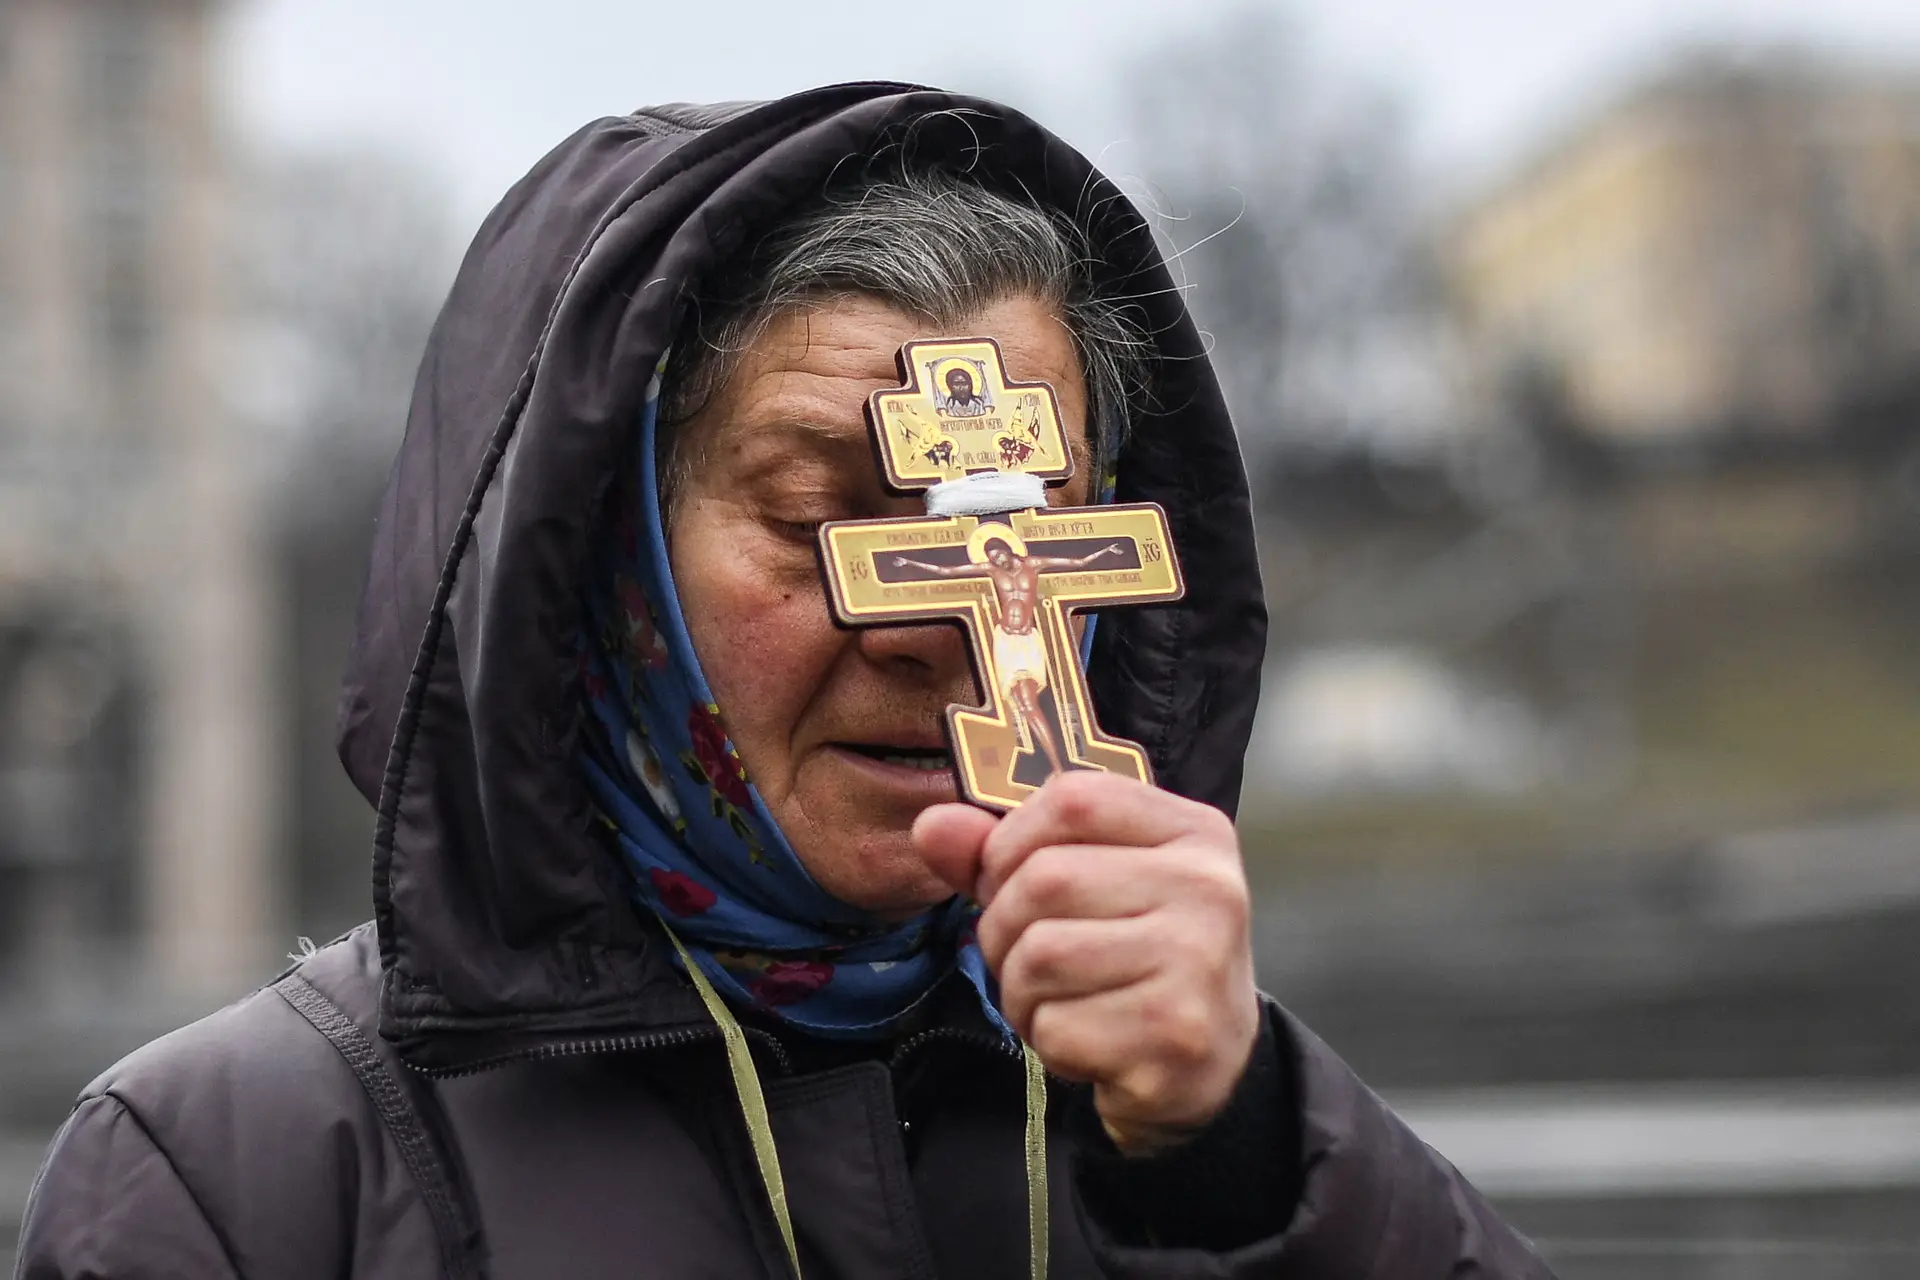 PRECES — Aos sons das sirenes, esta ucraniana de Kiev deposita em Deus a esperança do regresso à paz, num conflito que opõe irmãos da mesma fé